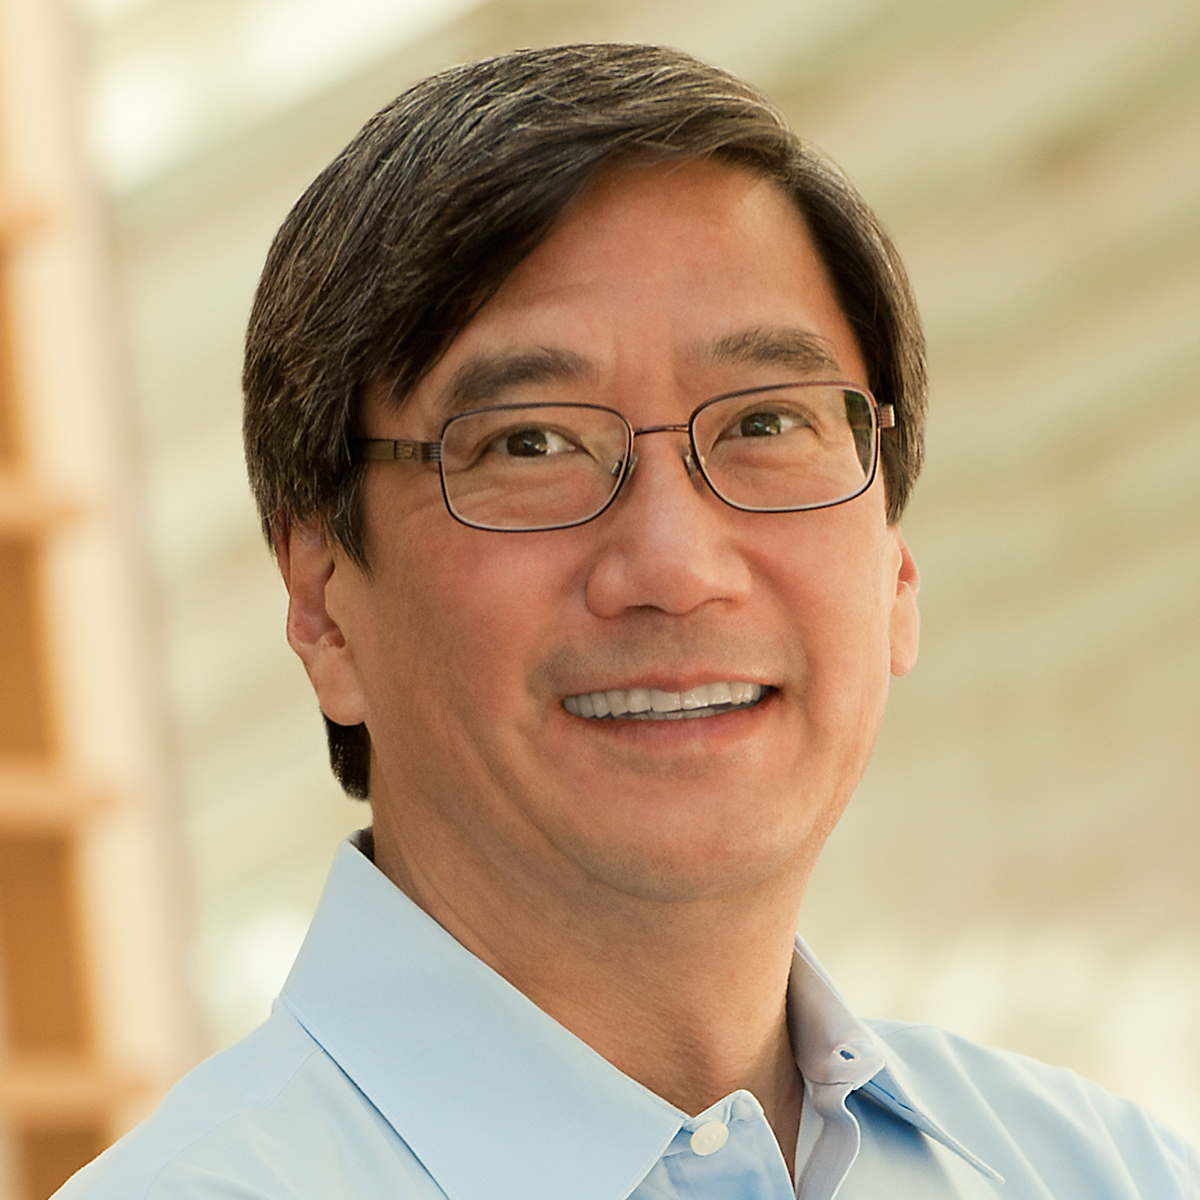 Peter S. Kim, Ph.D.